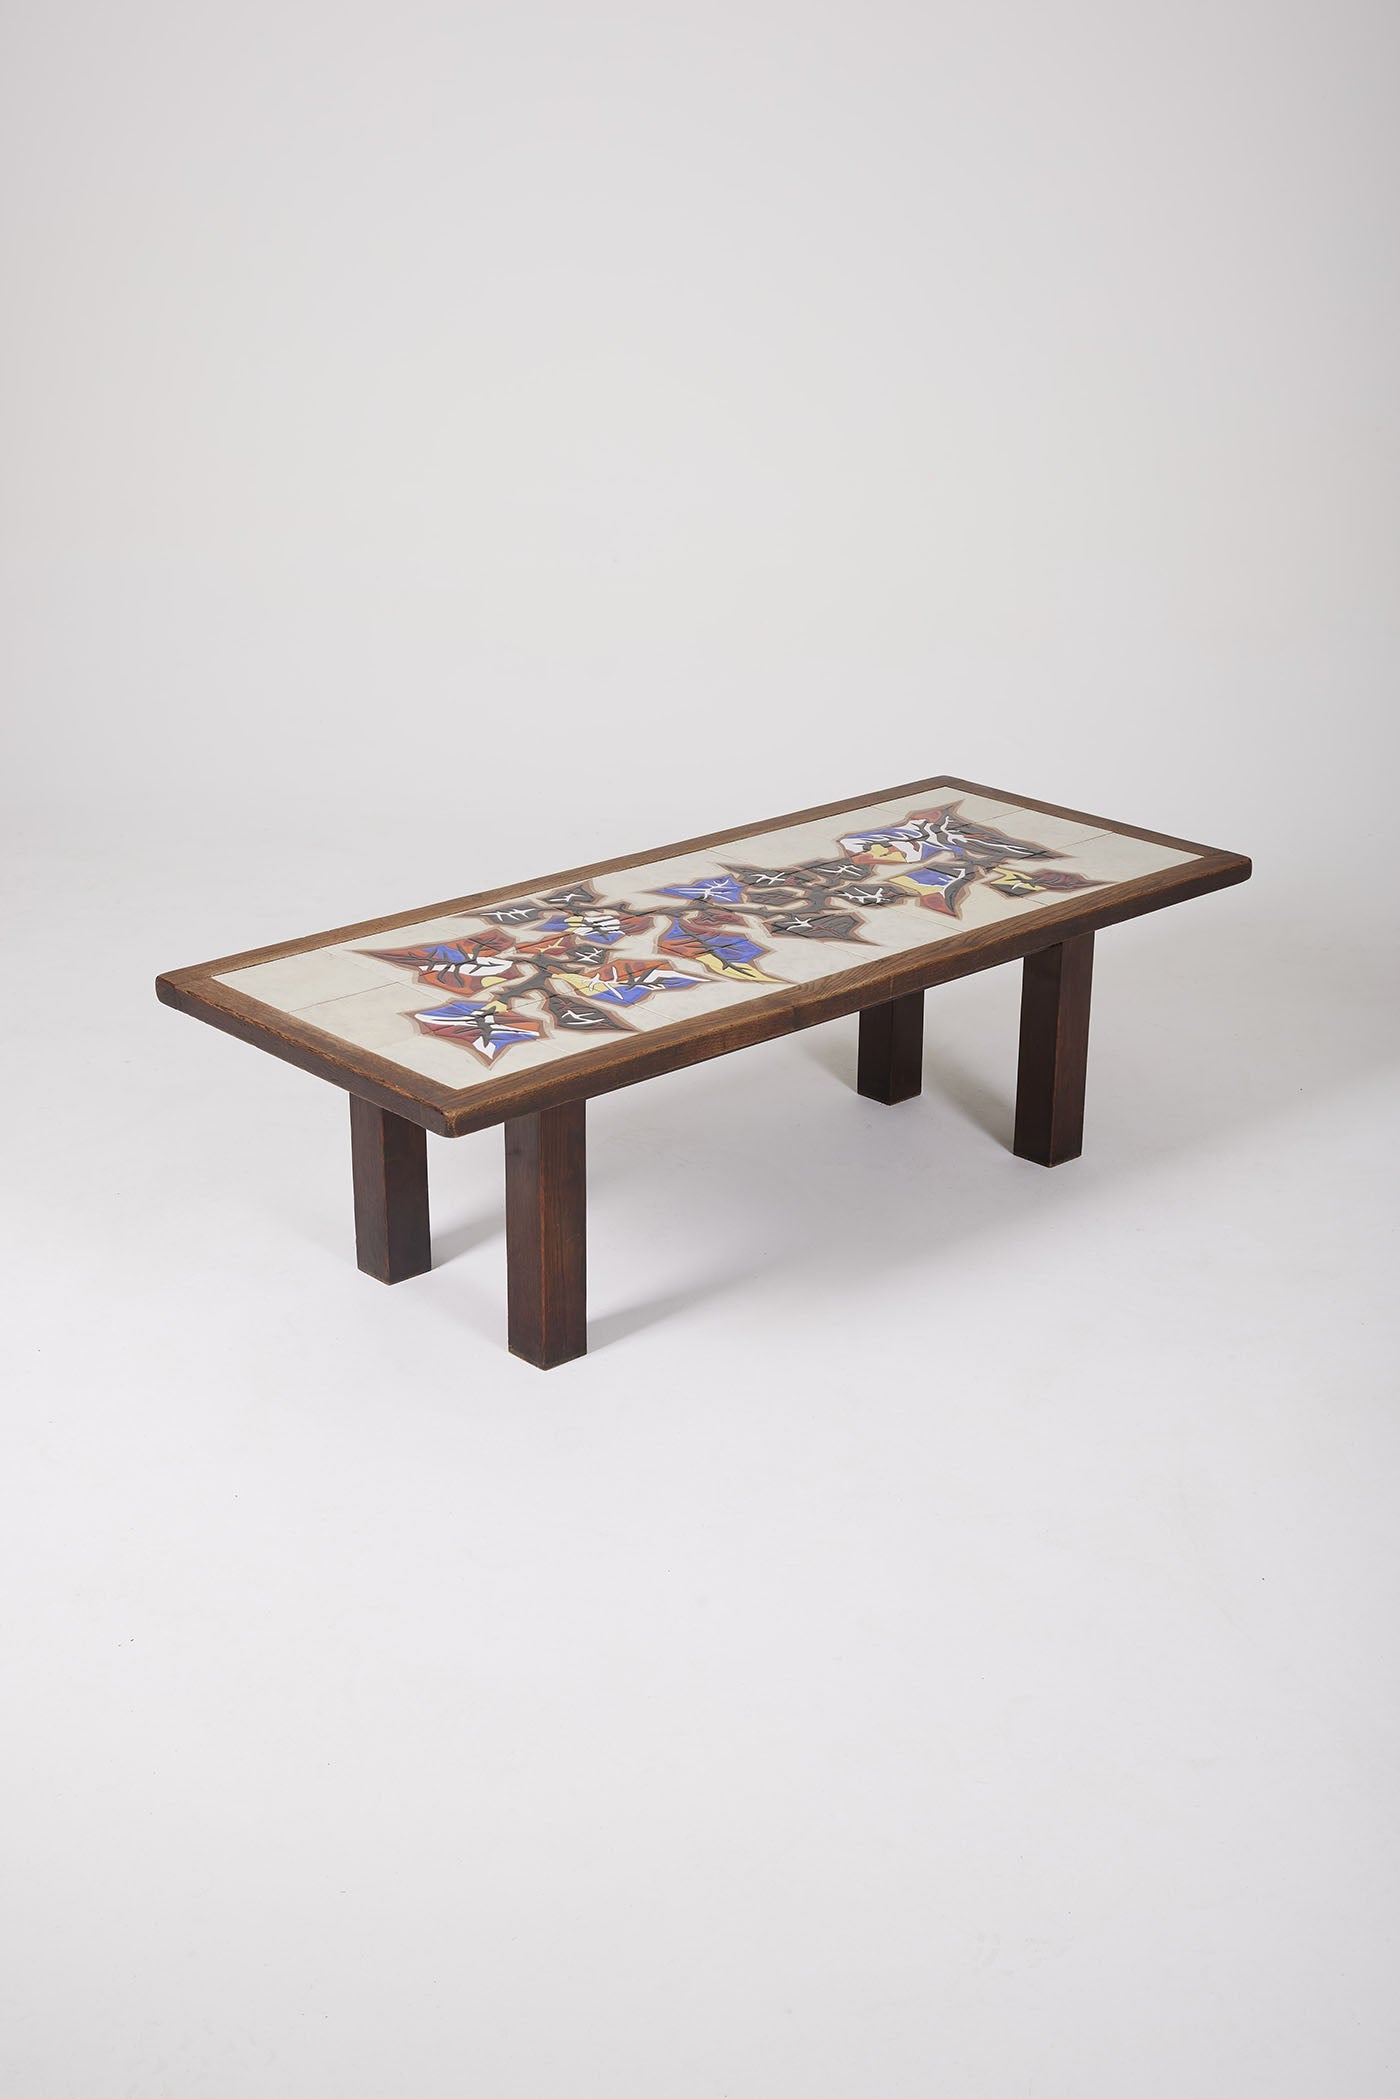 Table basse en céramique du céramiste français Jean Lurçat (1892-1966) datant des années 50. Le plateau est en céramique blanche à motif floraux jaune, rouge et bleu, la structure est en bois. Très bon état.